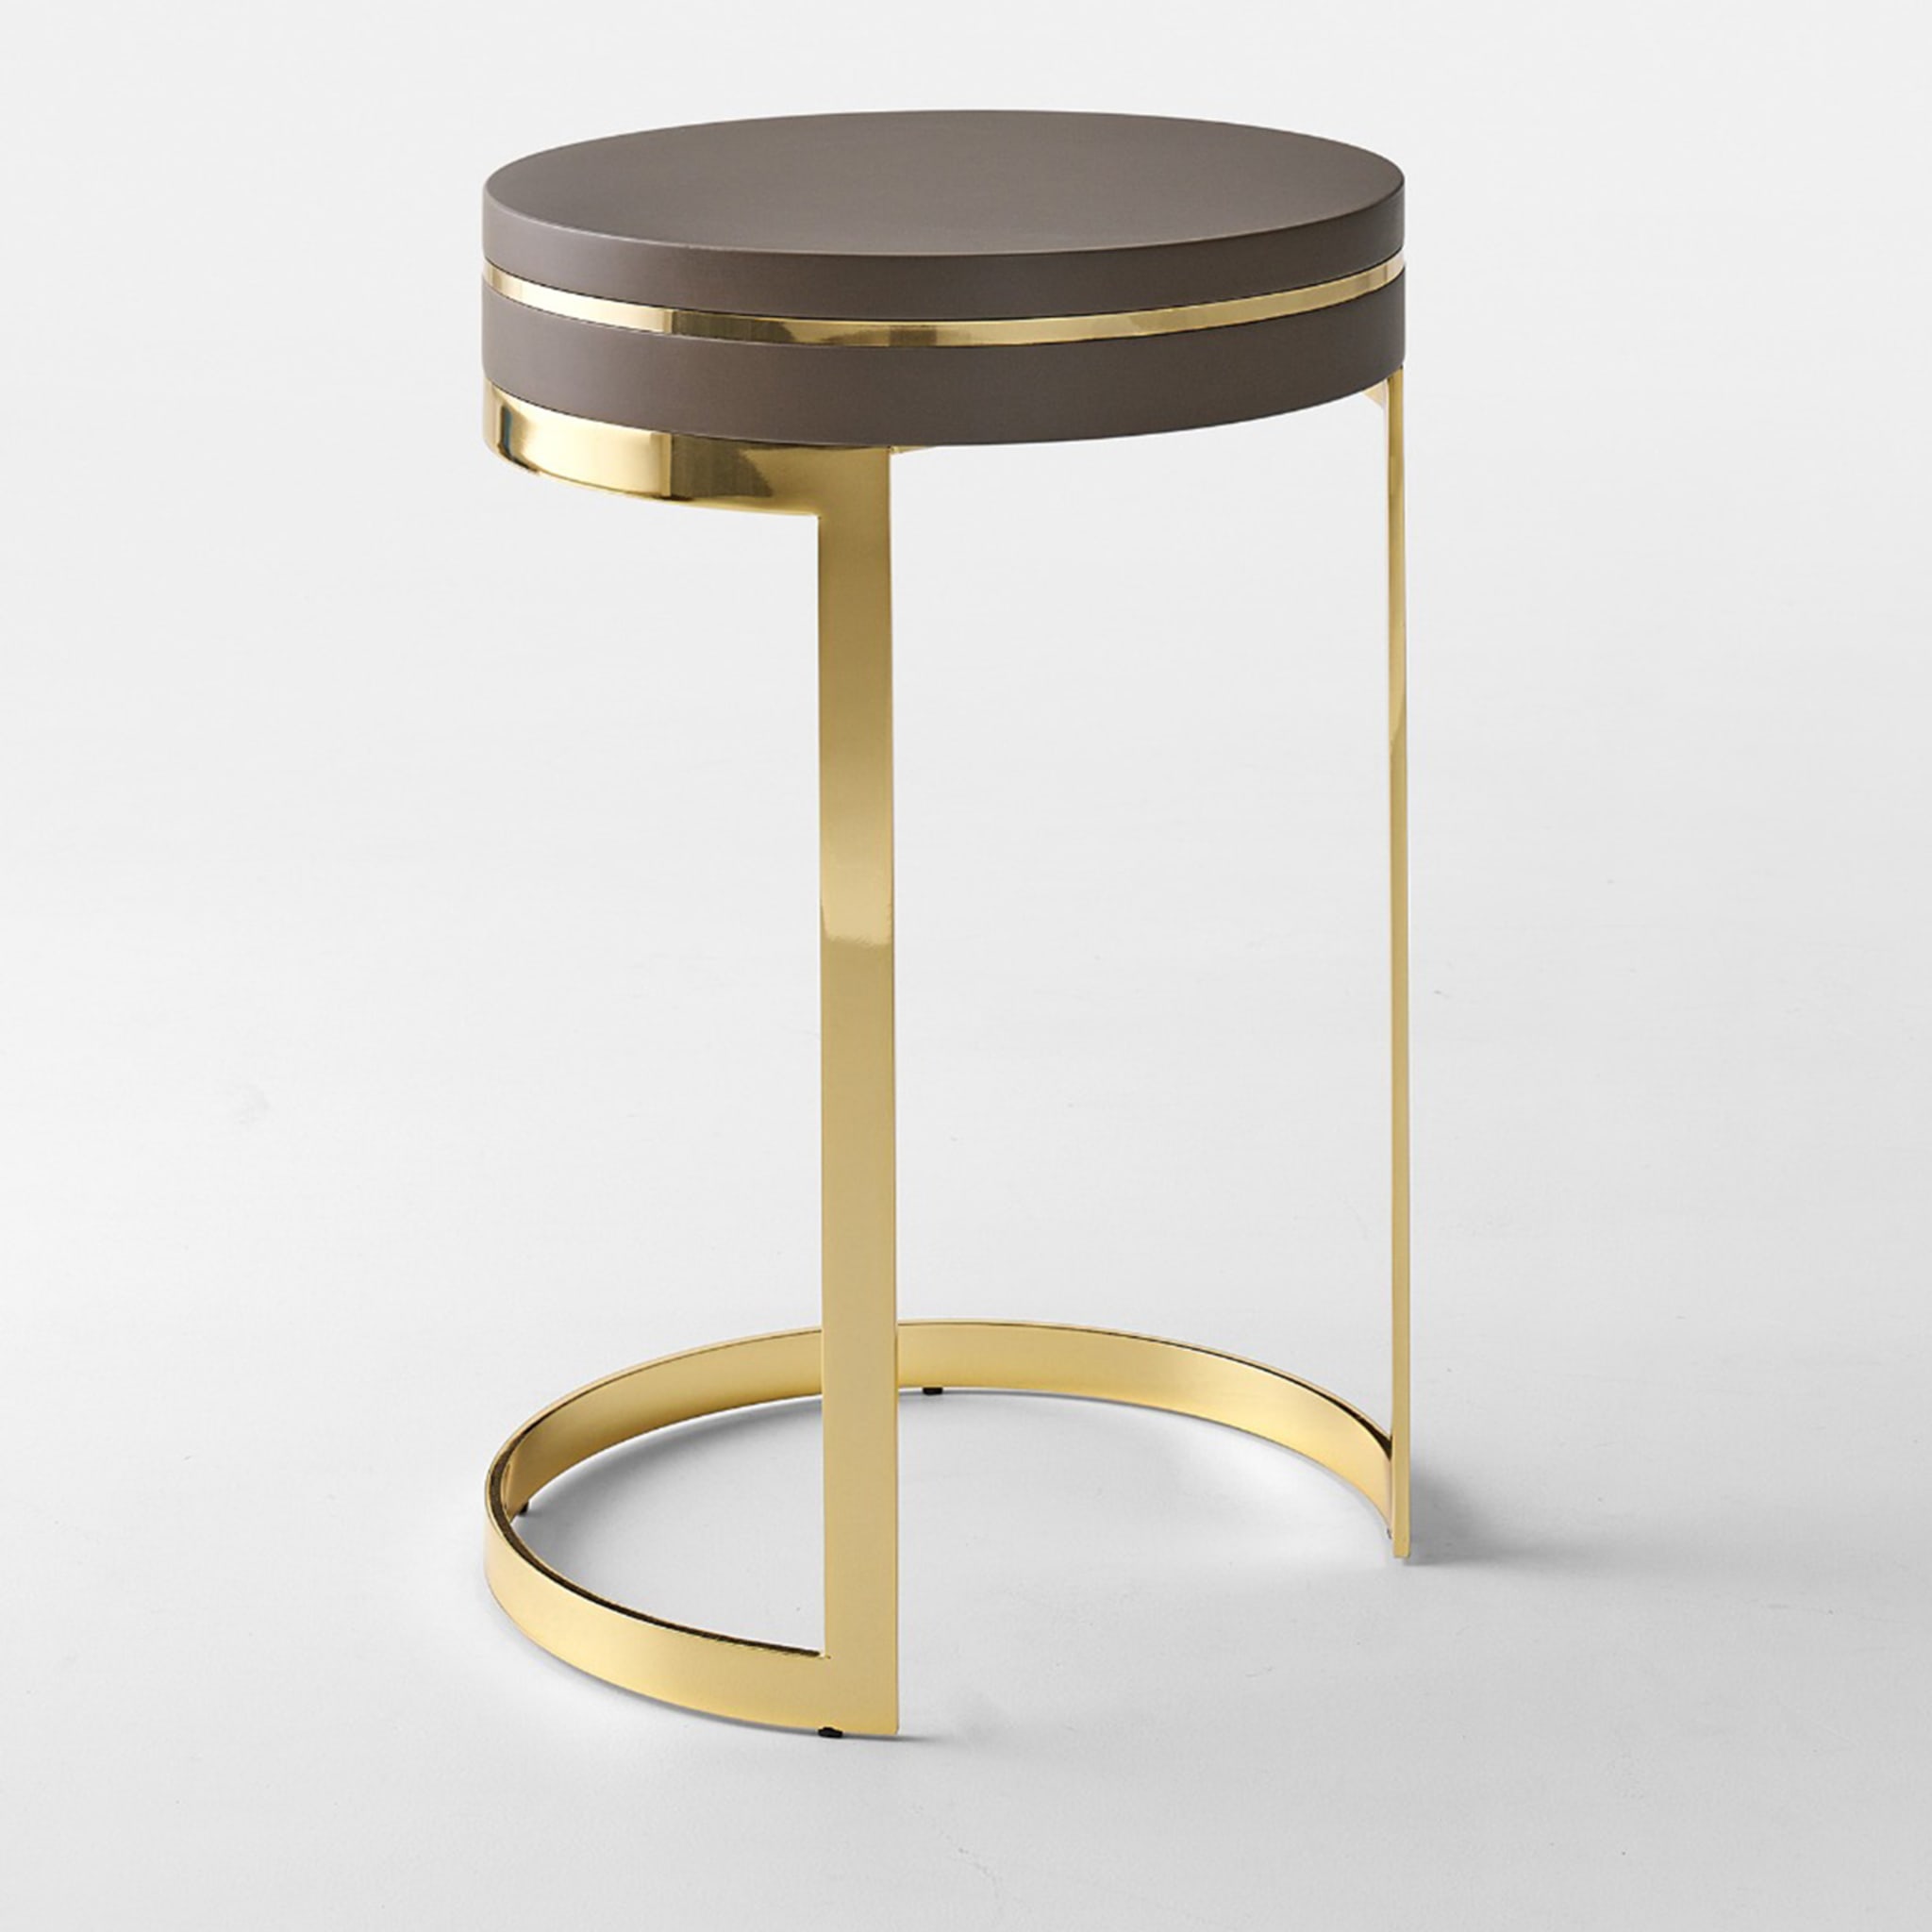 Topazio Round Golden & Brown Side Table - Alternative view 1